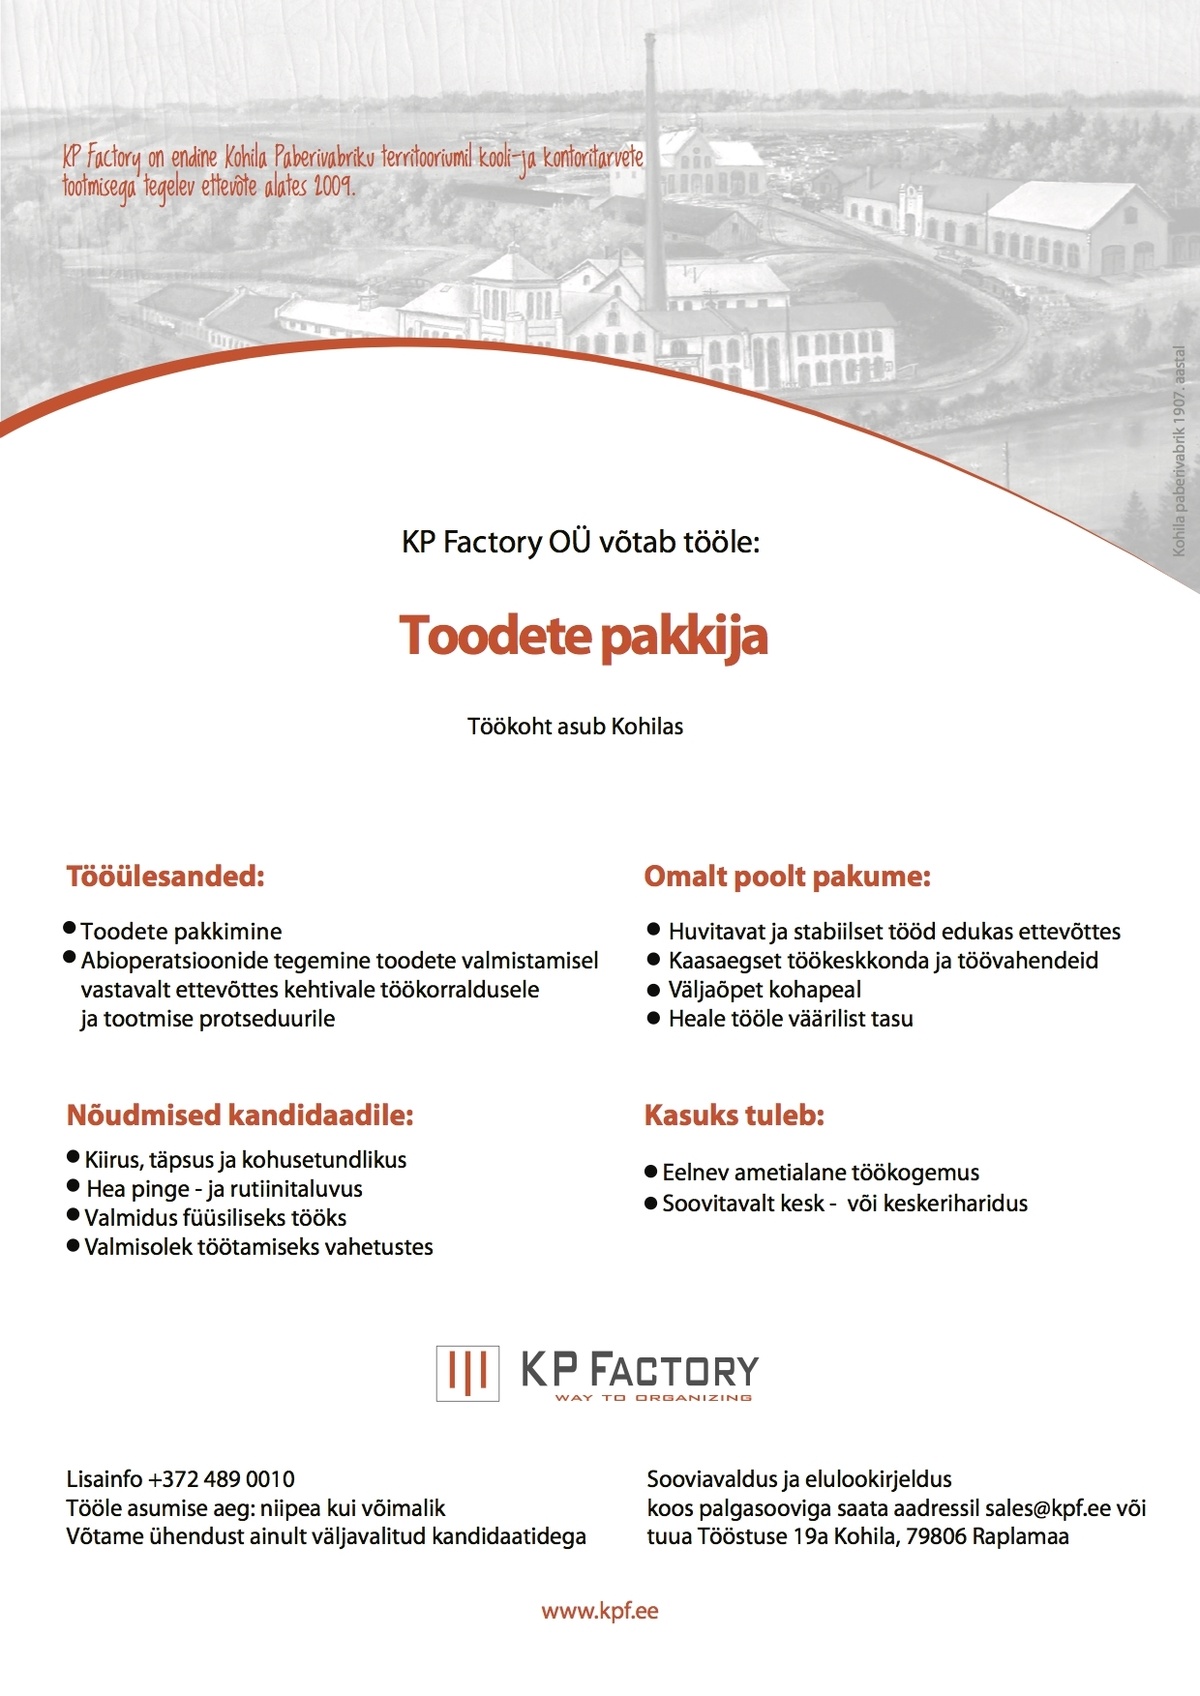 KP Factory OÜ Pakkija